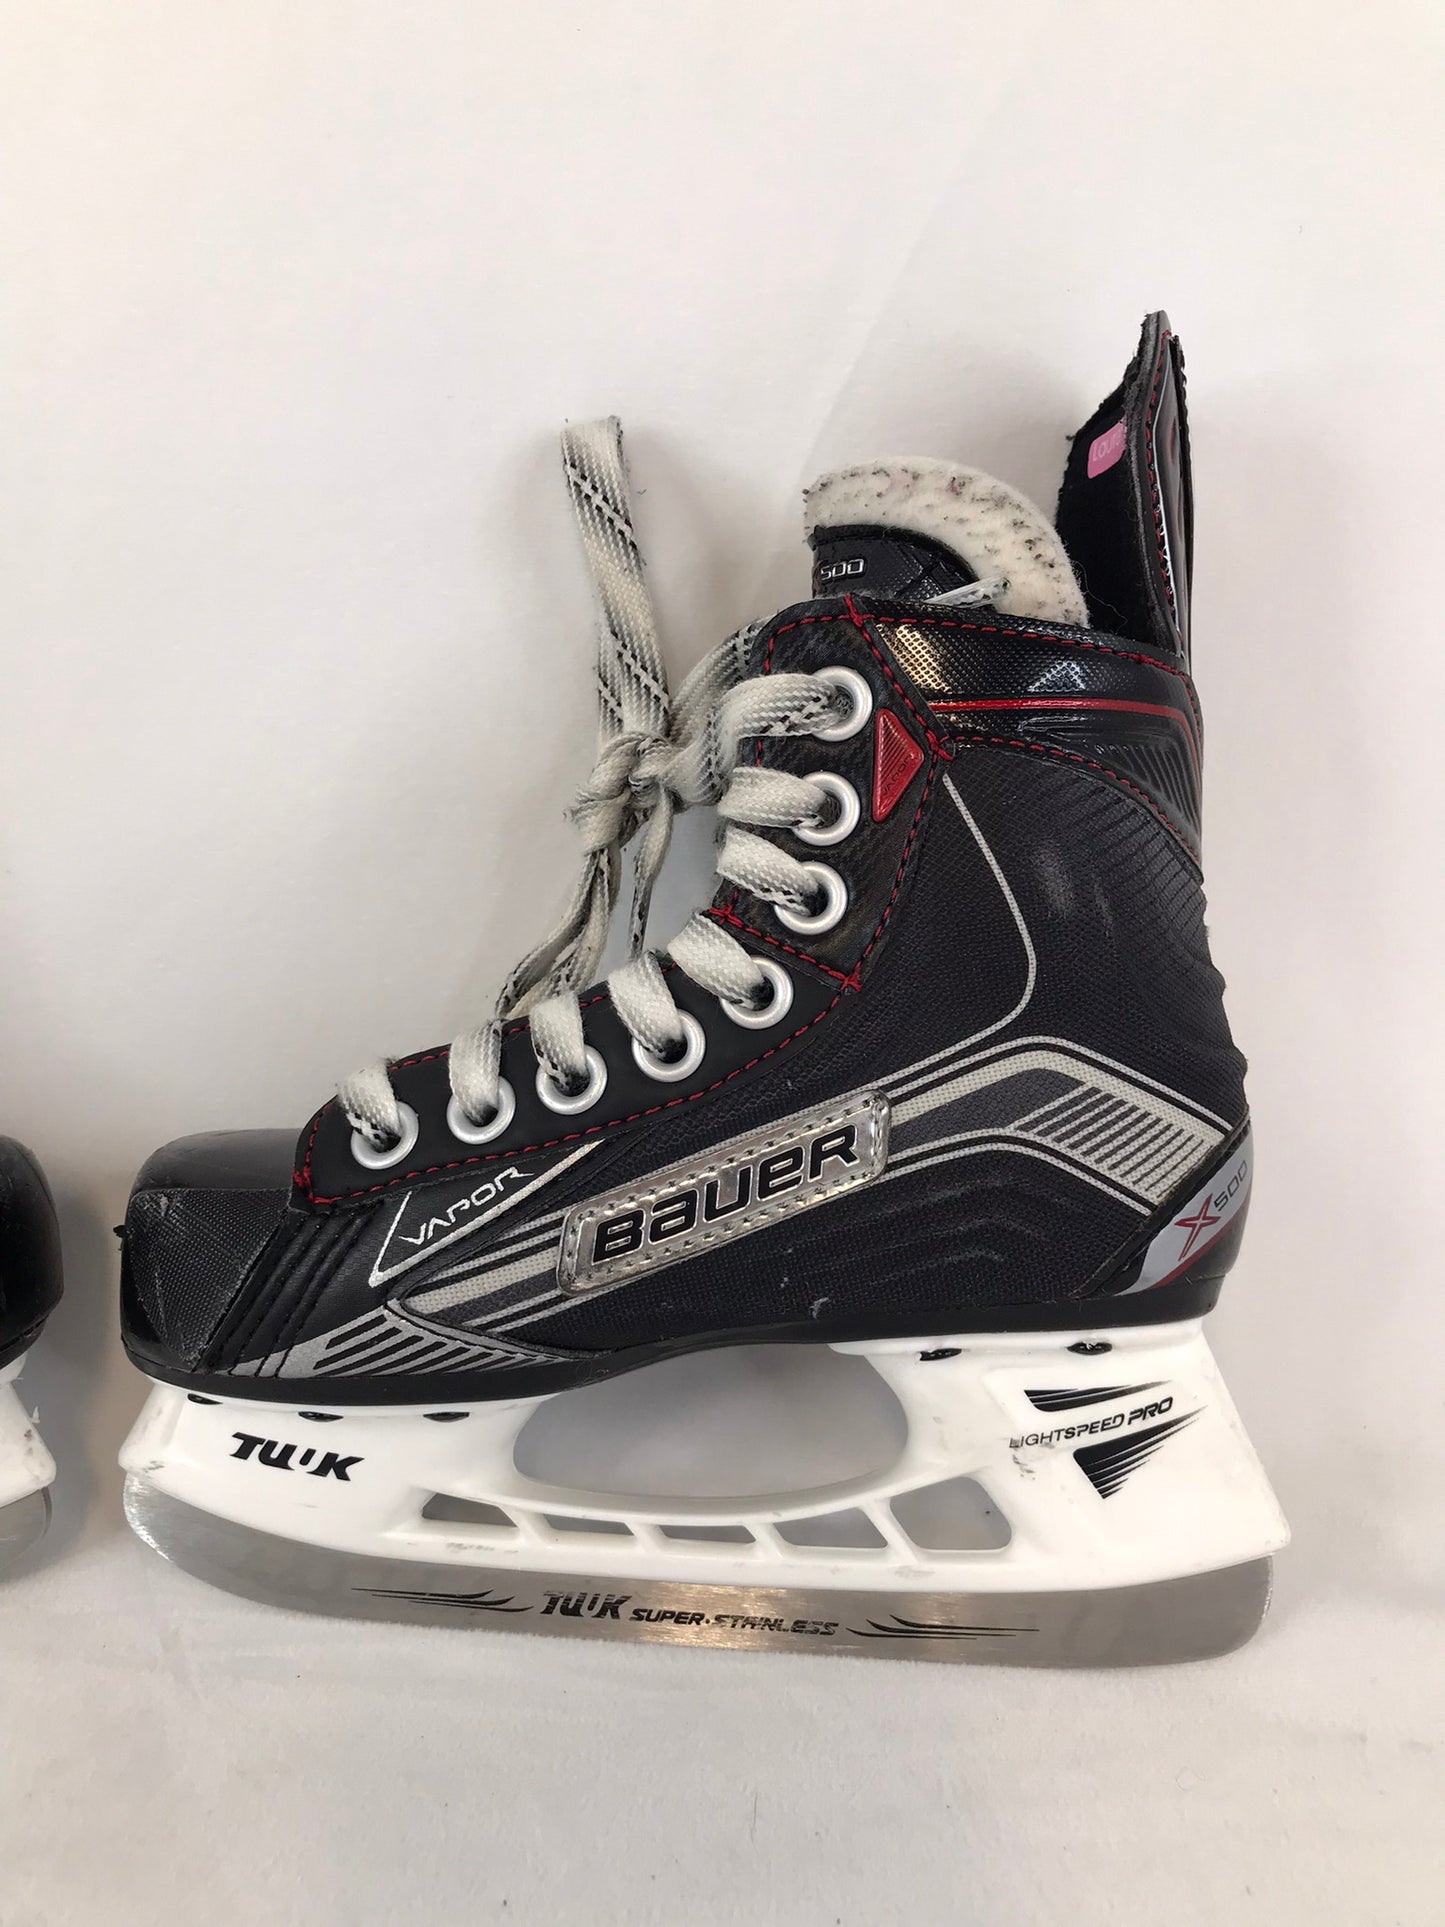 Hockey Skates Child Size 12 Shoe Size Bauer Vapor X500 Excellent